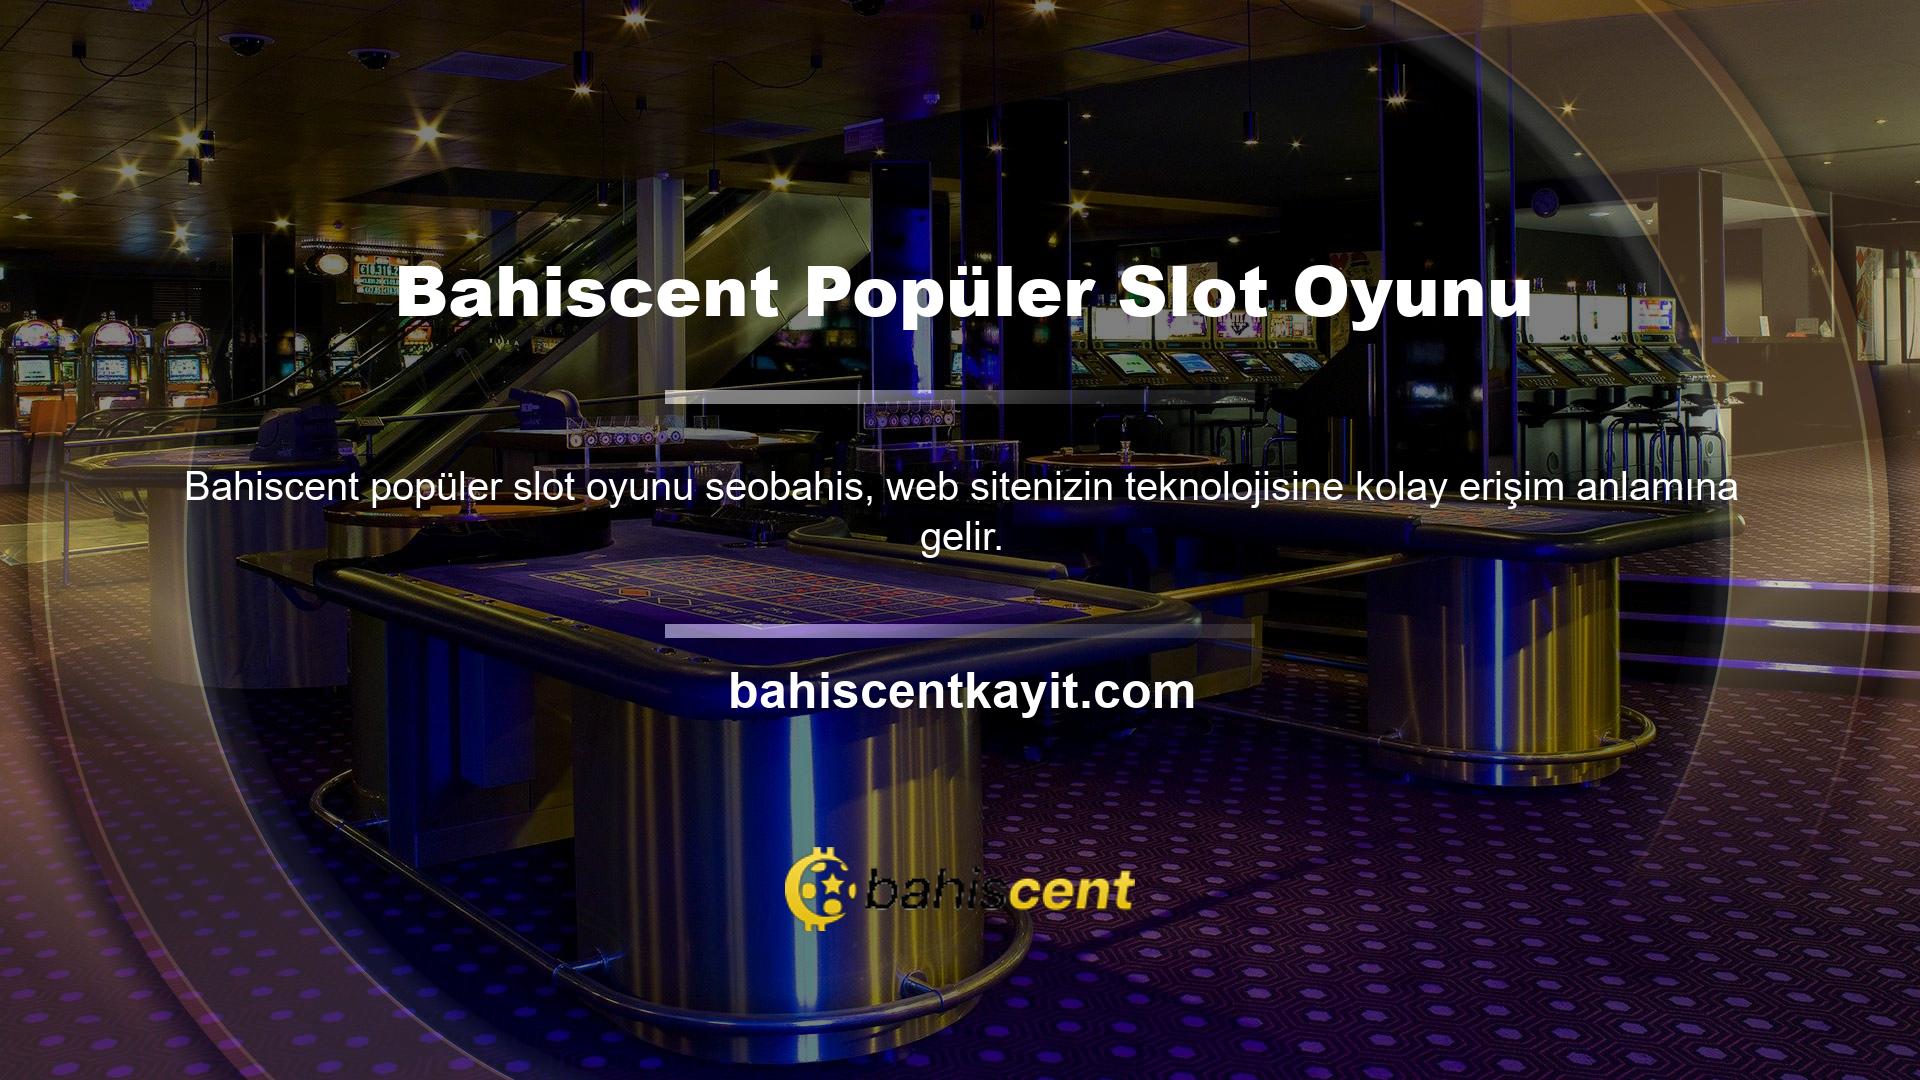 Bahiscent slotları sitenin ana sayfasındaki casino bölümünde sunulmaktadır